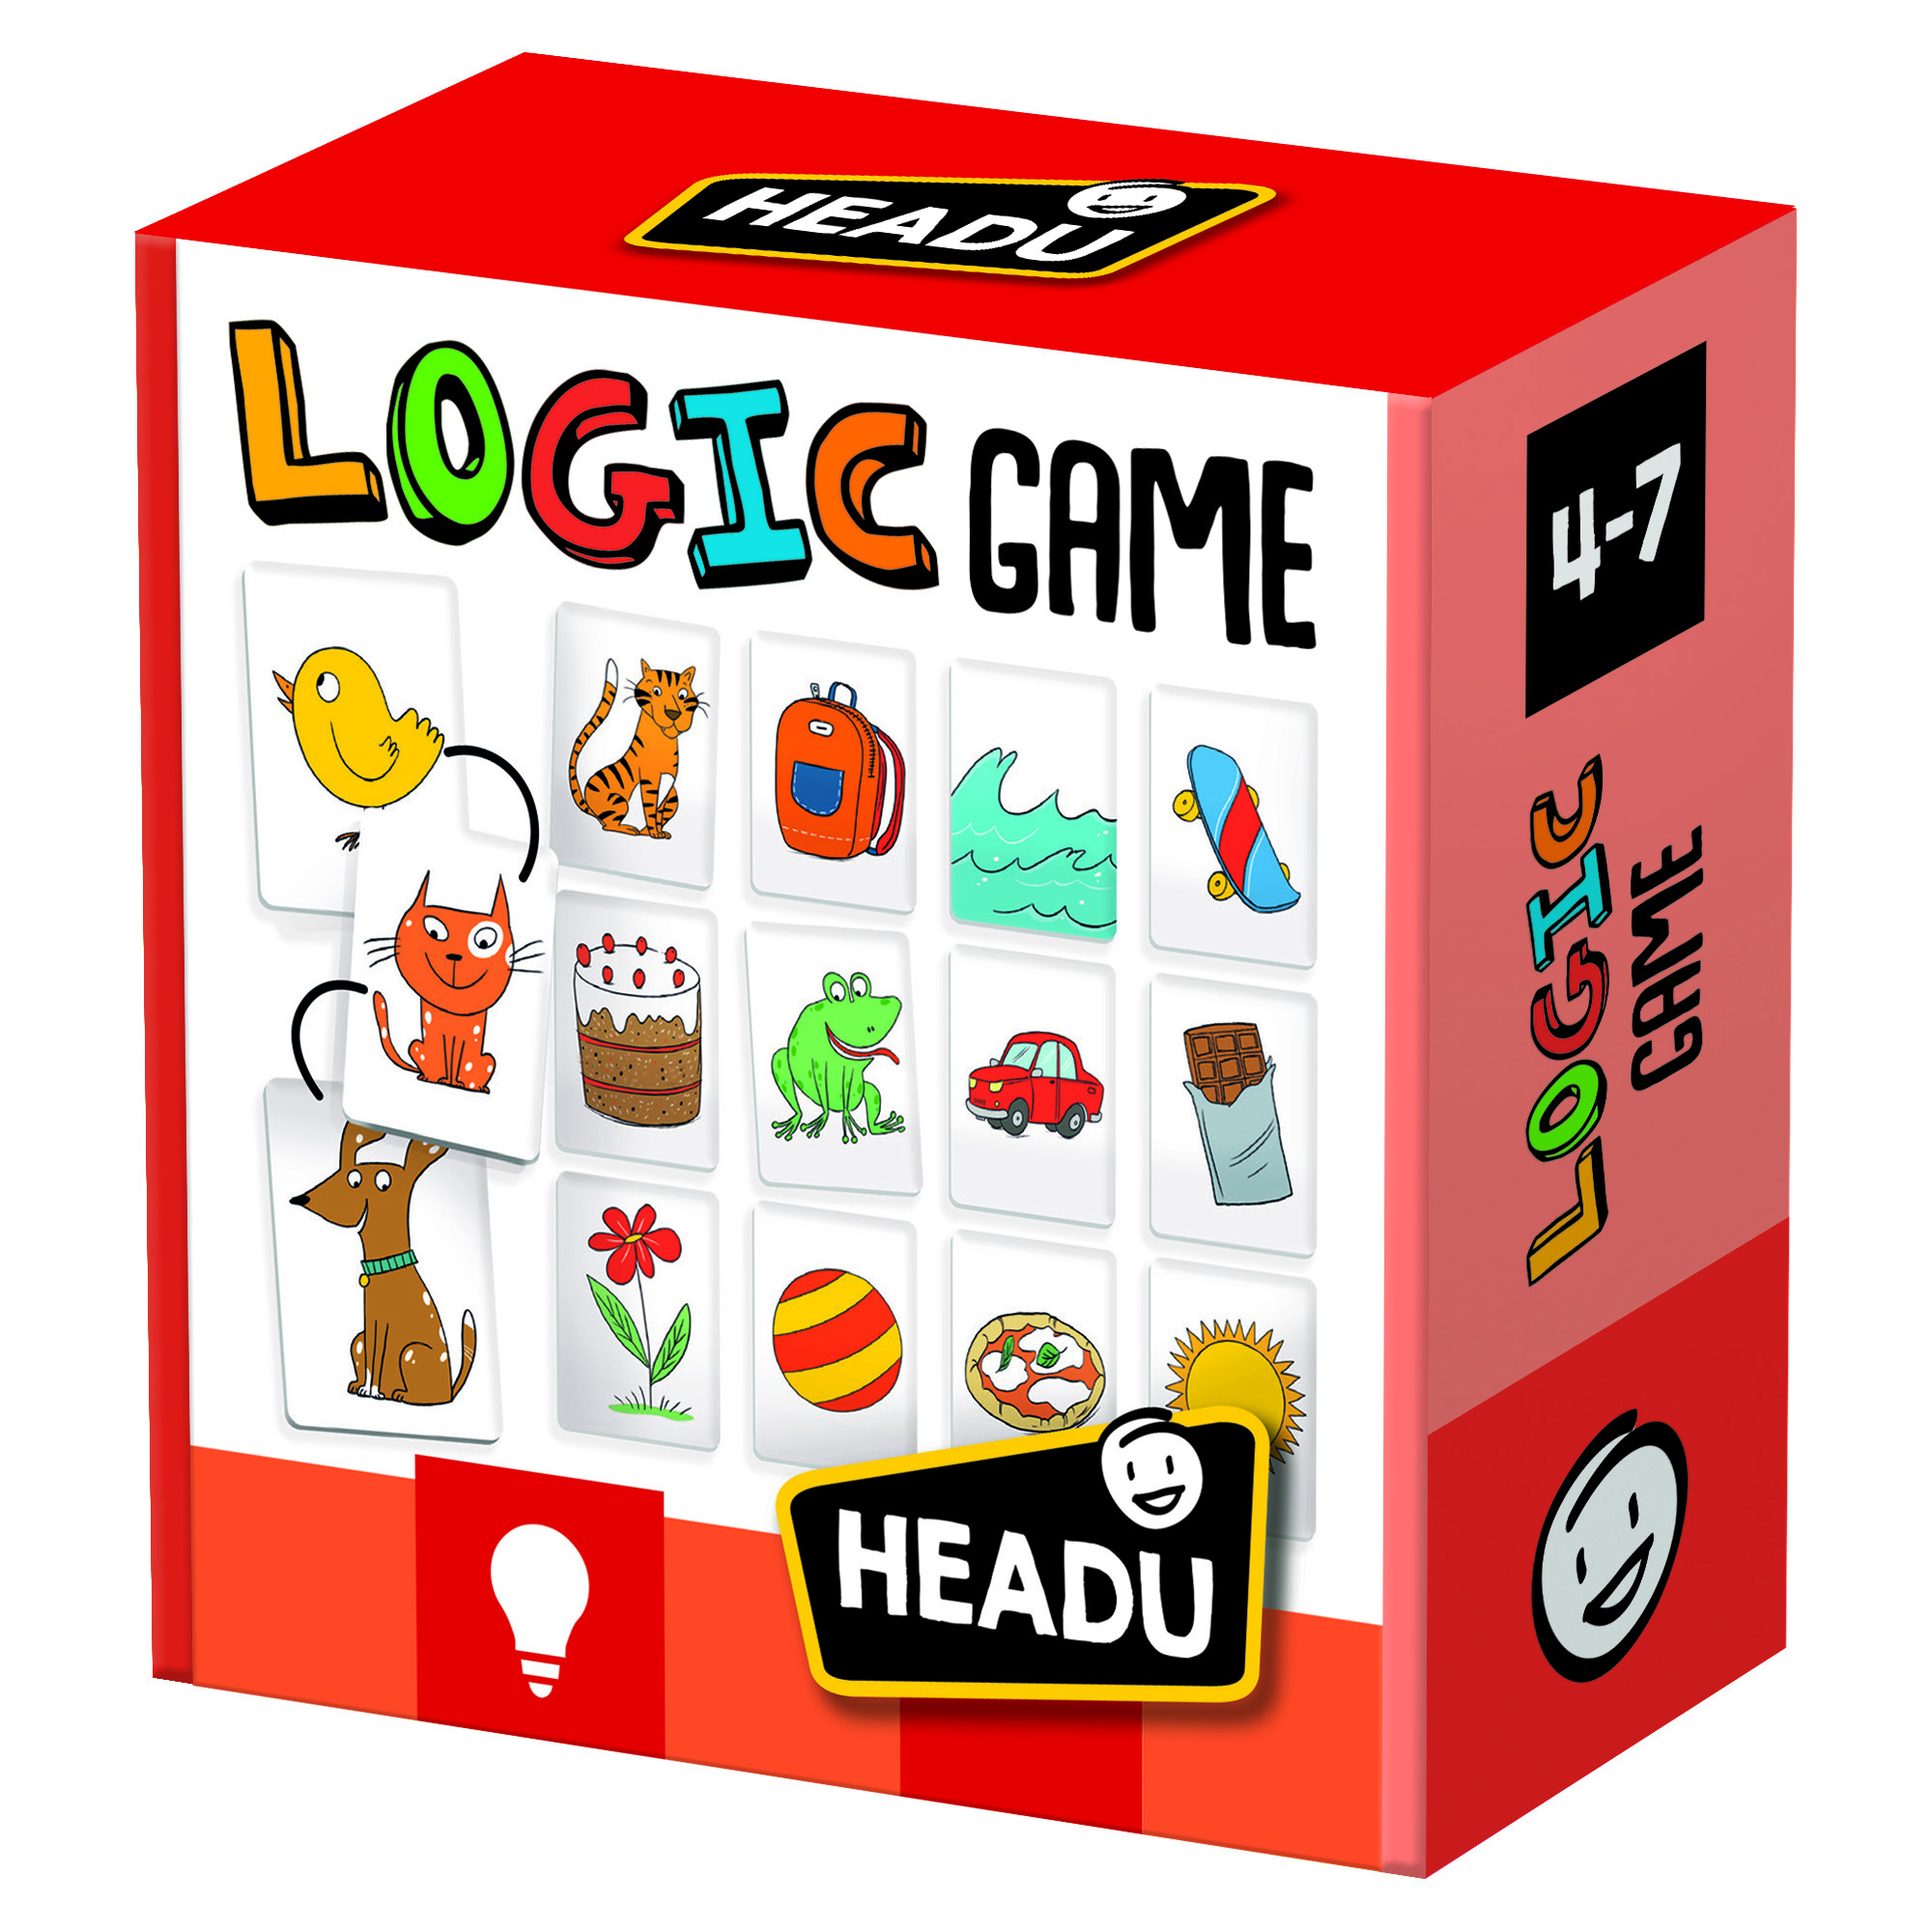 LOGIC GAME - Bộ thẻ chơi giúp phát triển trí thông minh Logic và tư duy lập luận cho trẻ từ 4-6 tuổi